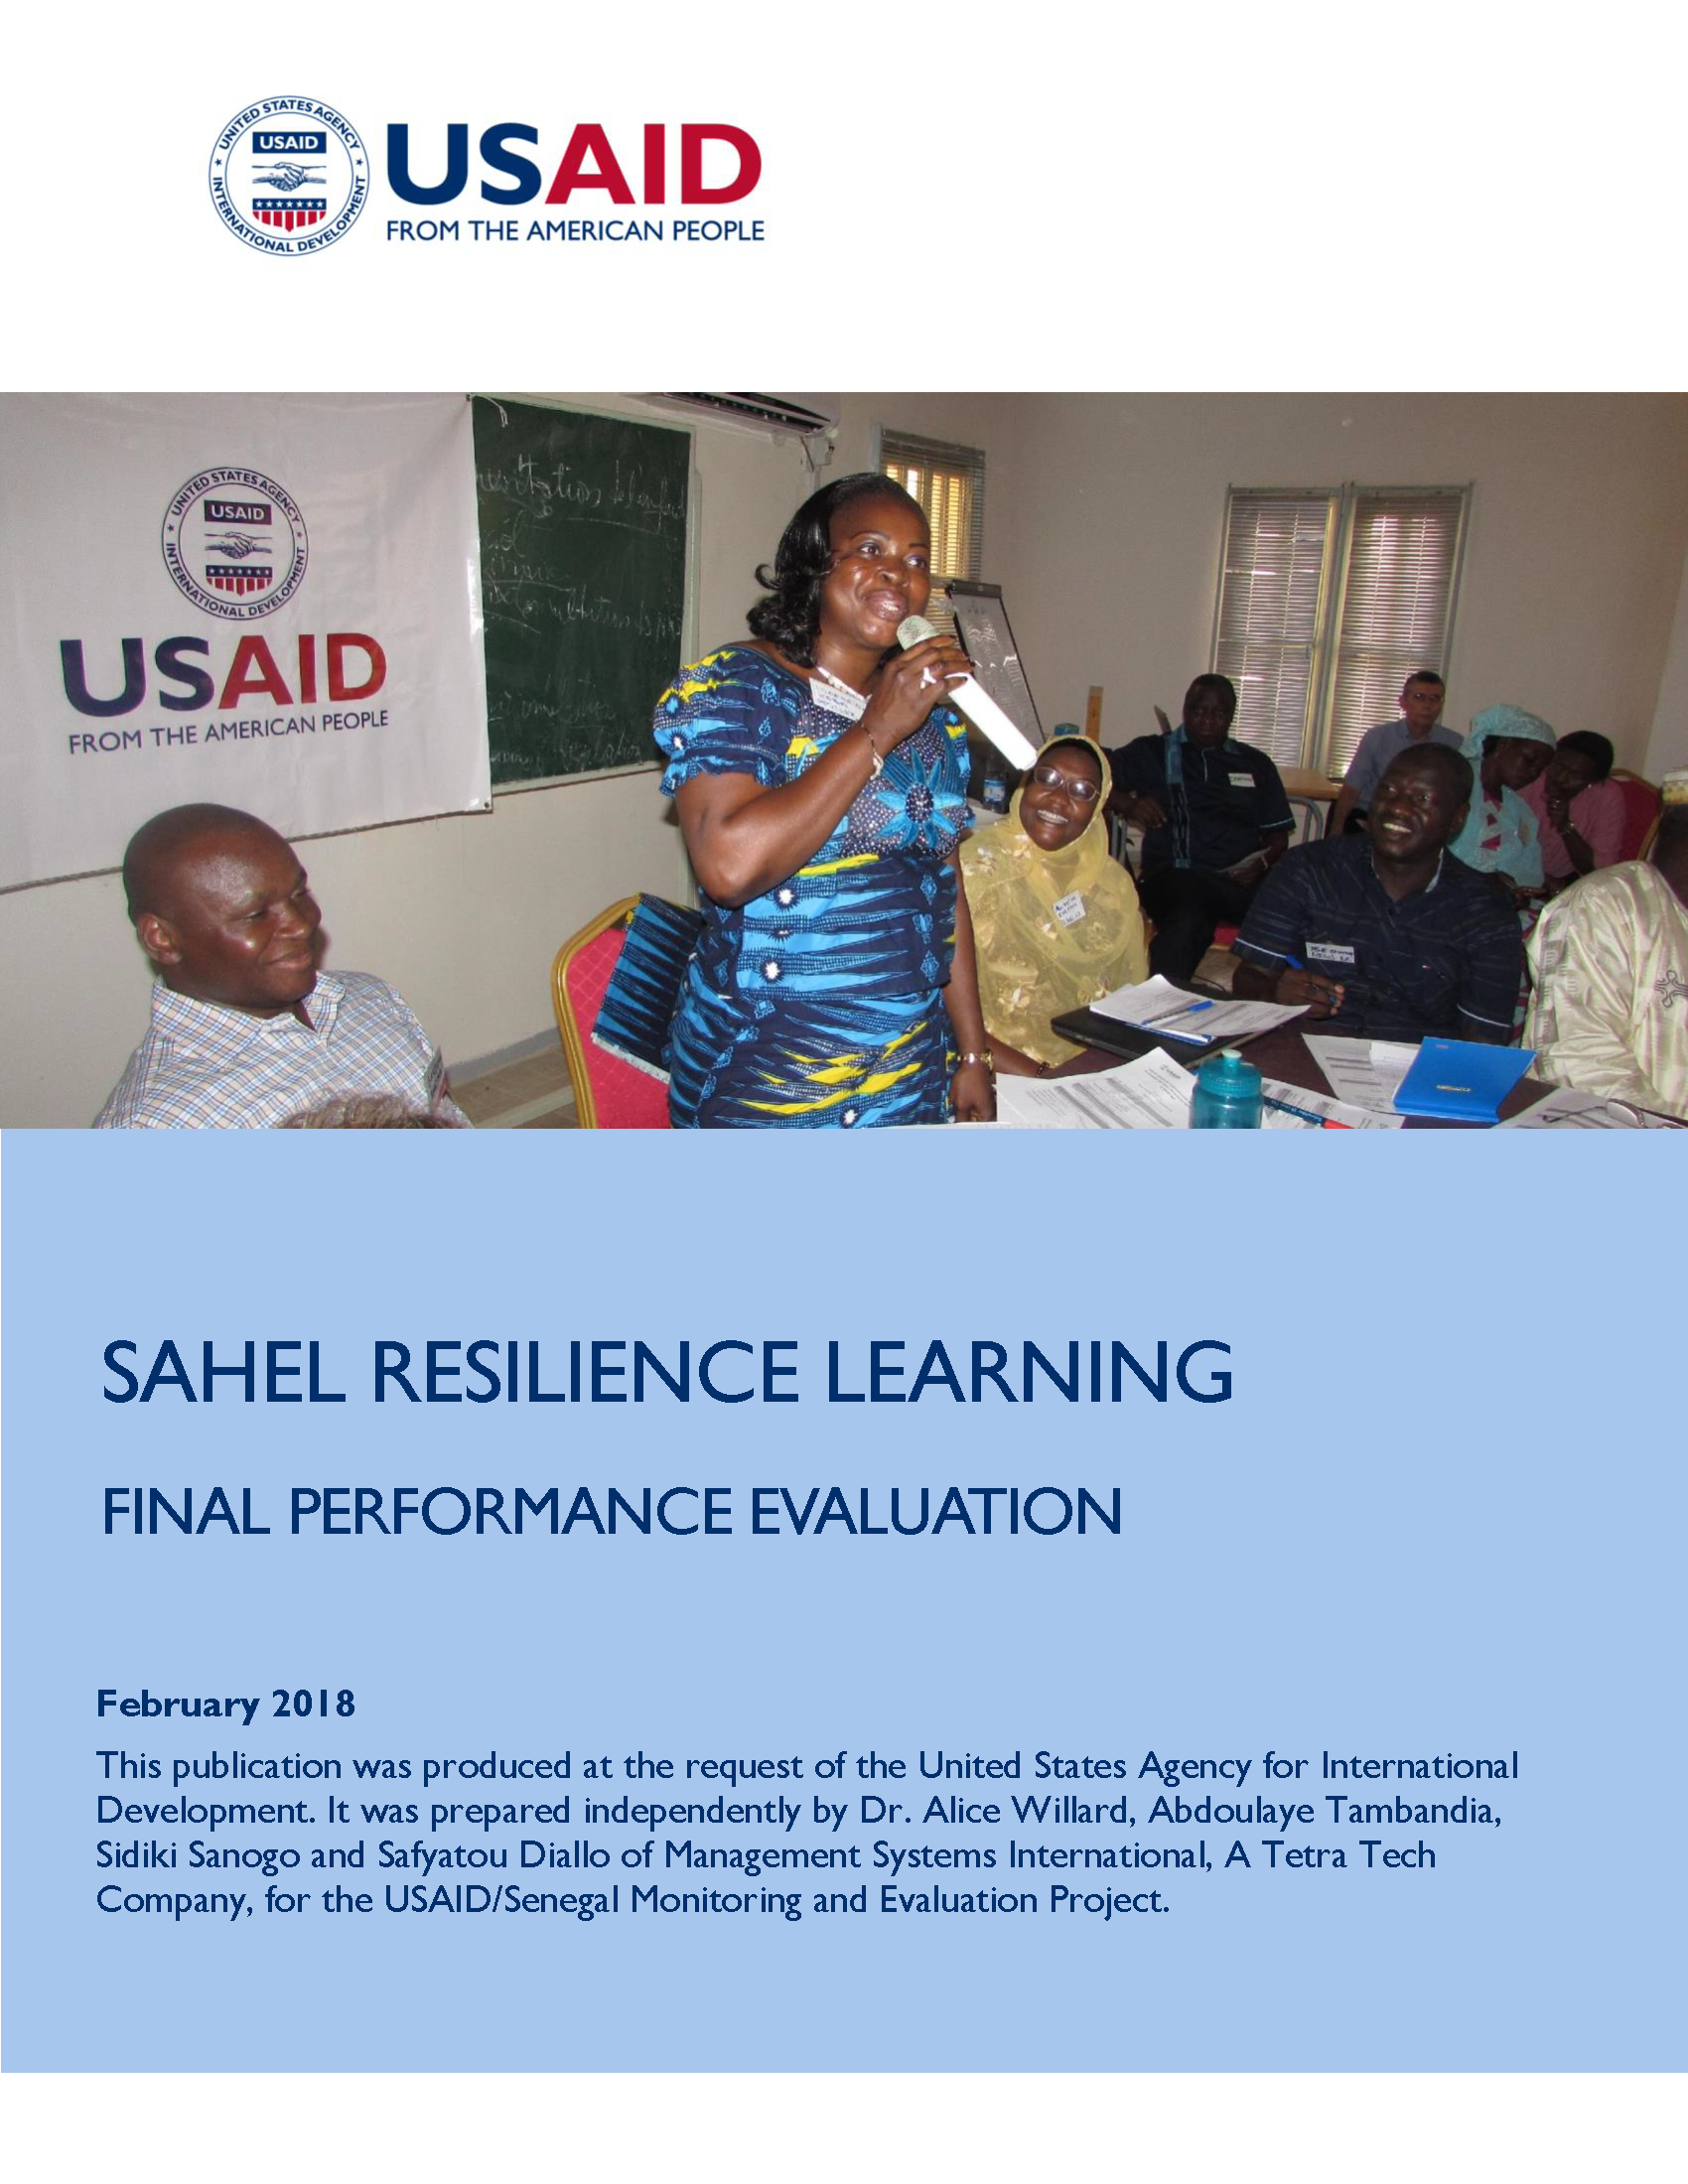 Image de couverture du rapport d'évaluation final de Sarel